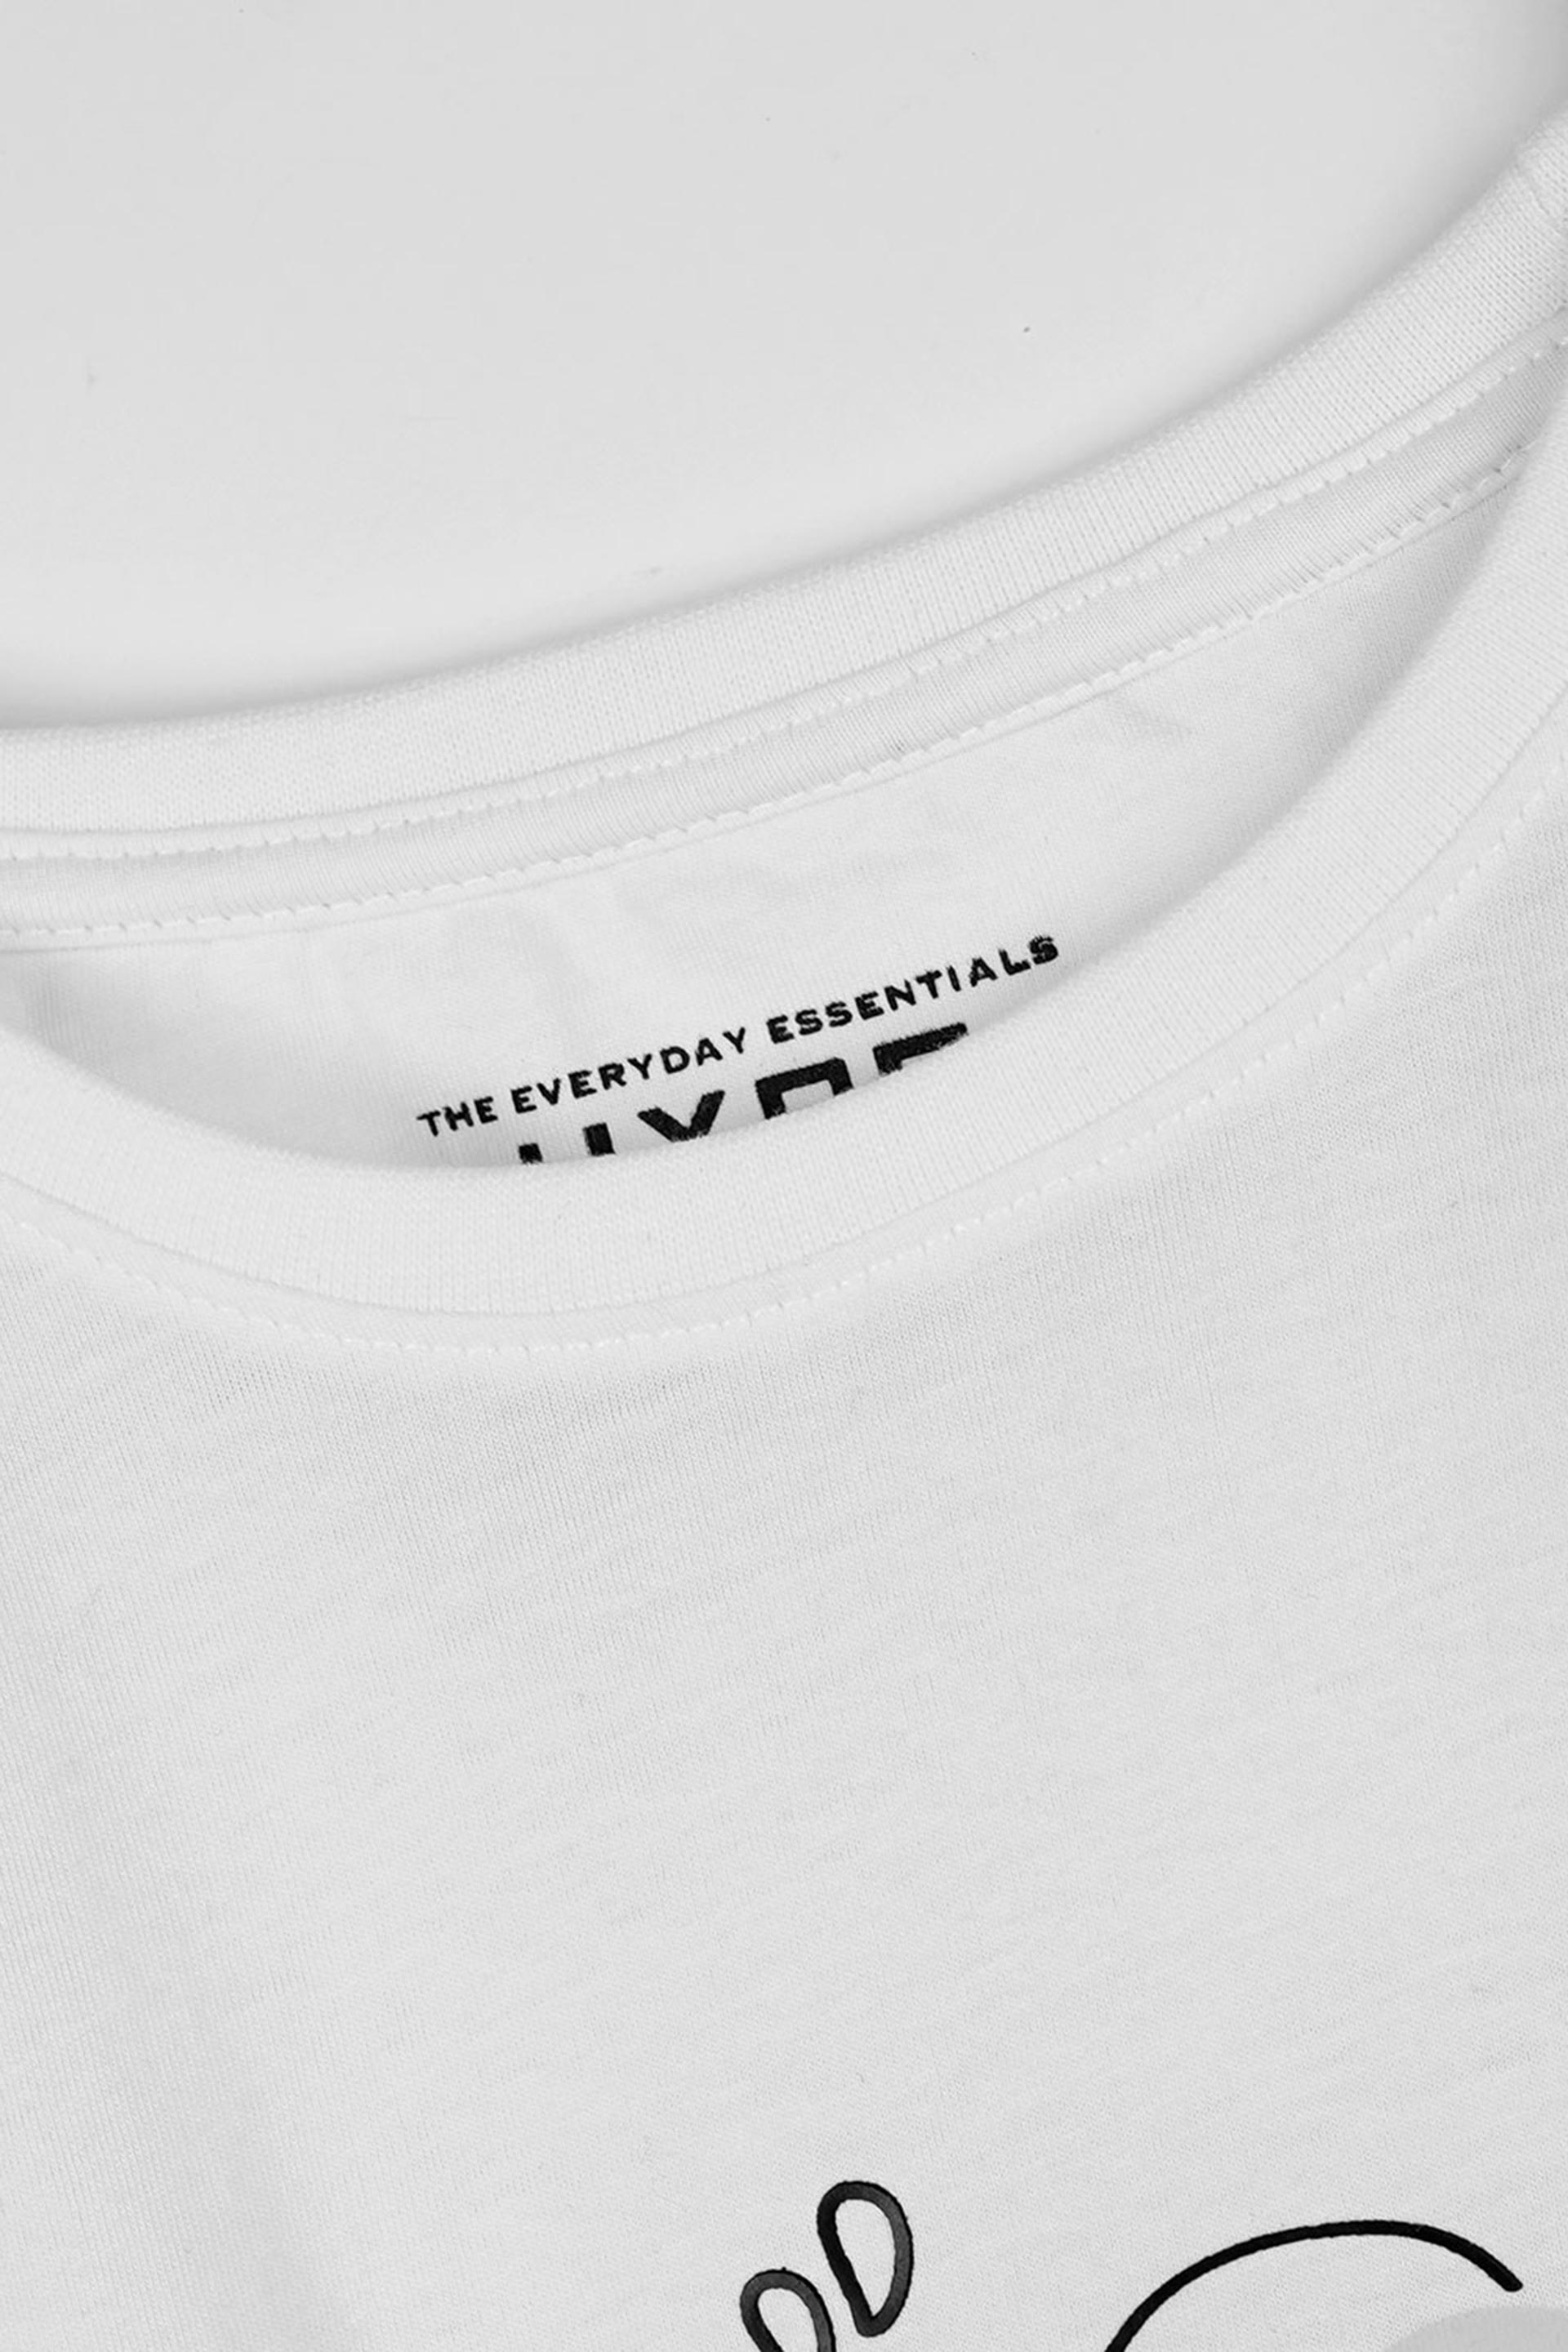 Graphic White T-Shirt 001877